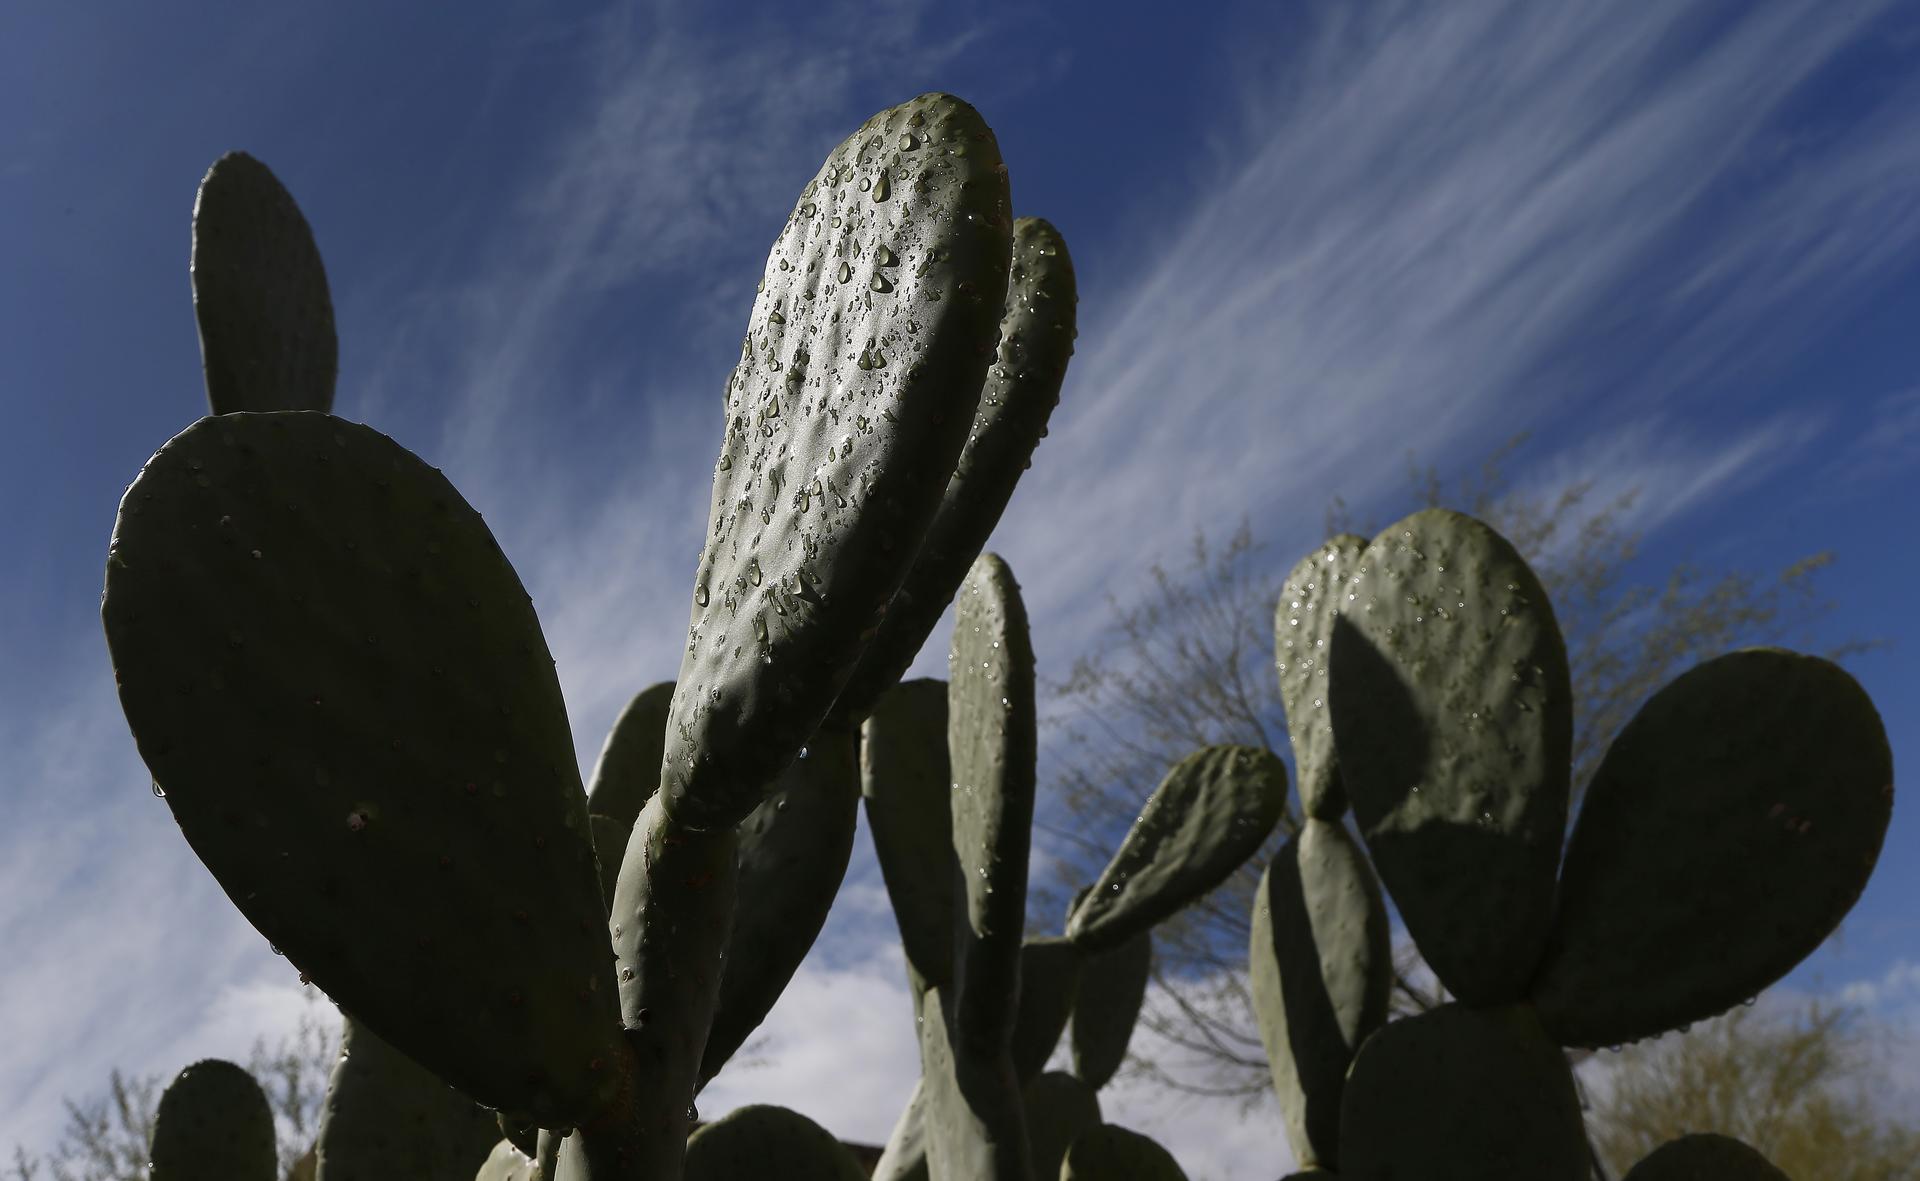 Cacti in Arizona